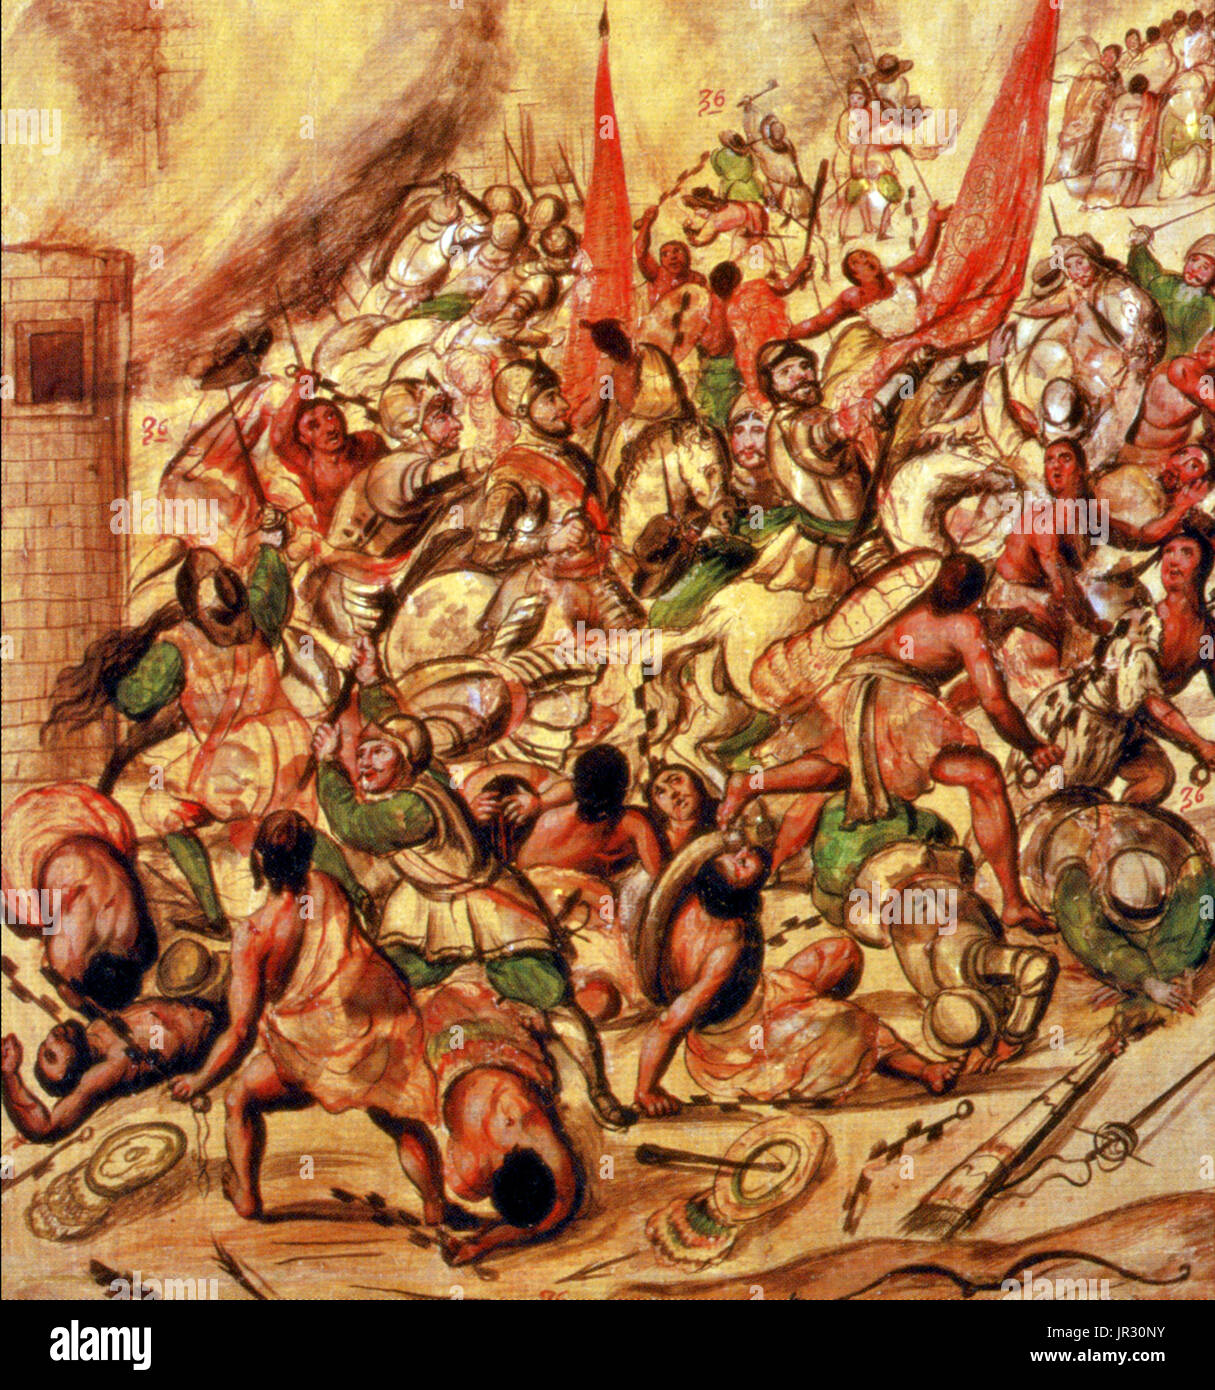 La conquista española de México,La Noche Triste,1520 Foto de stock